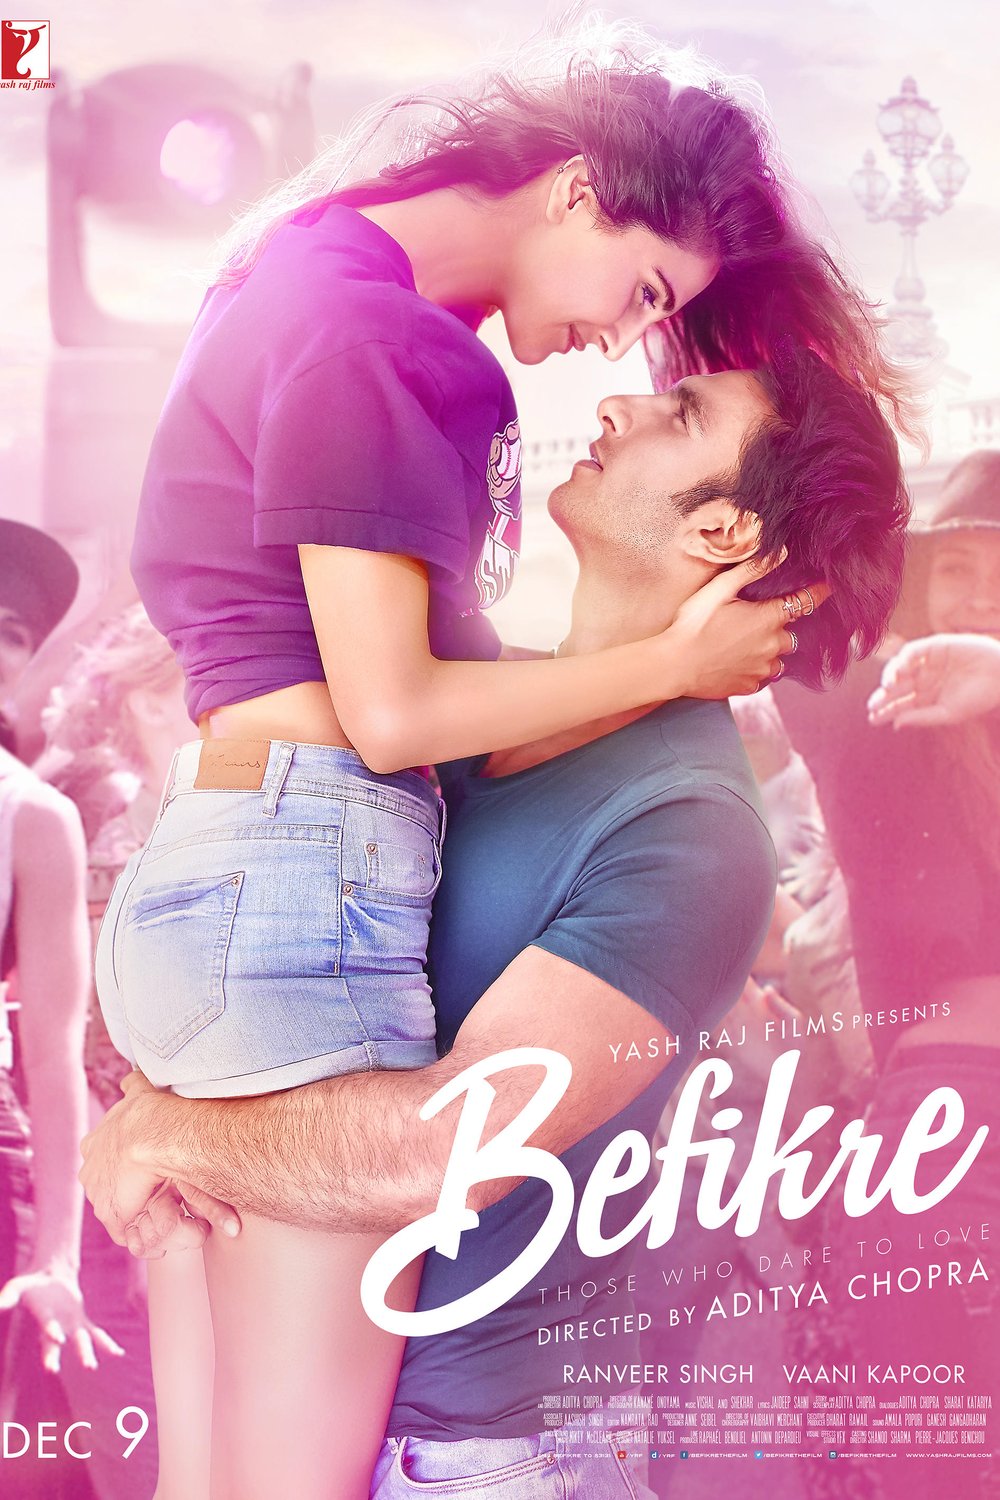 Poster of the movie Befikre